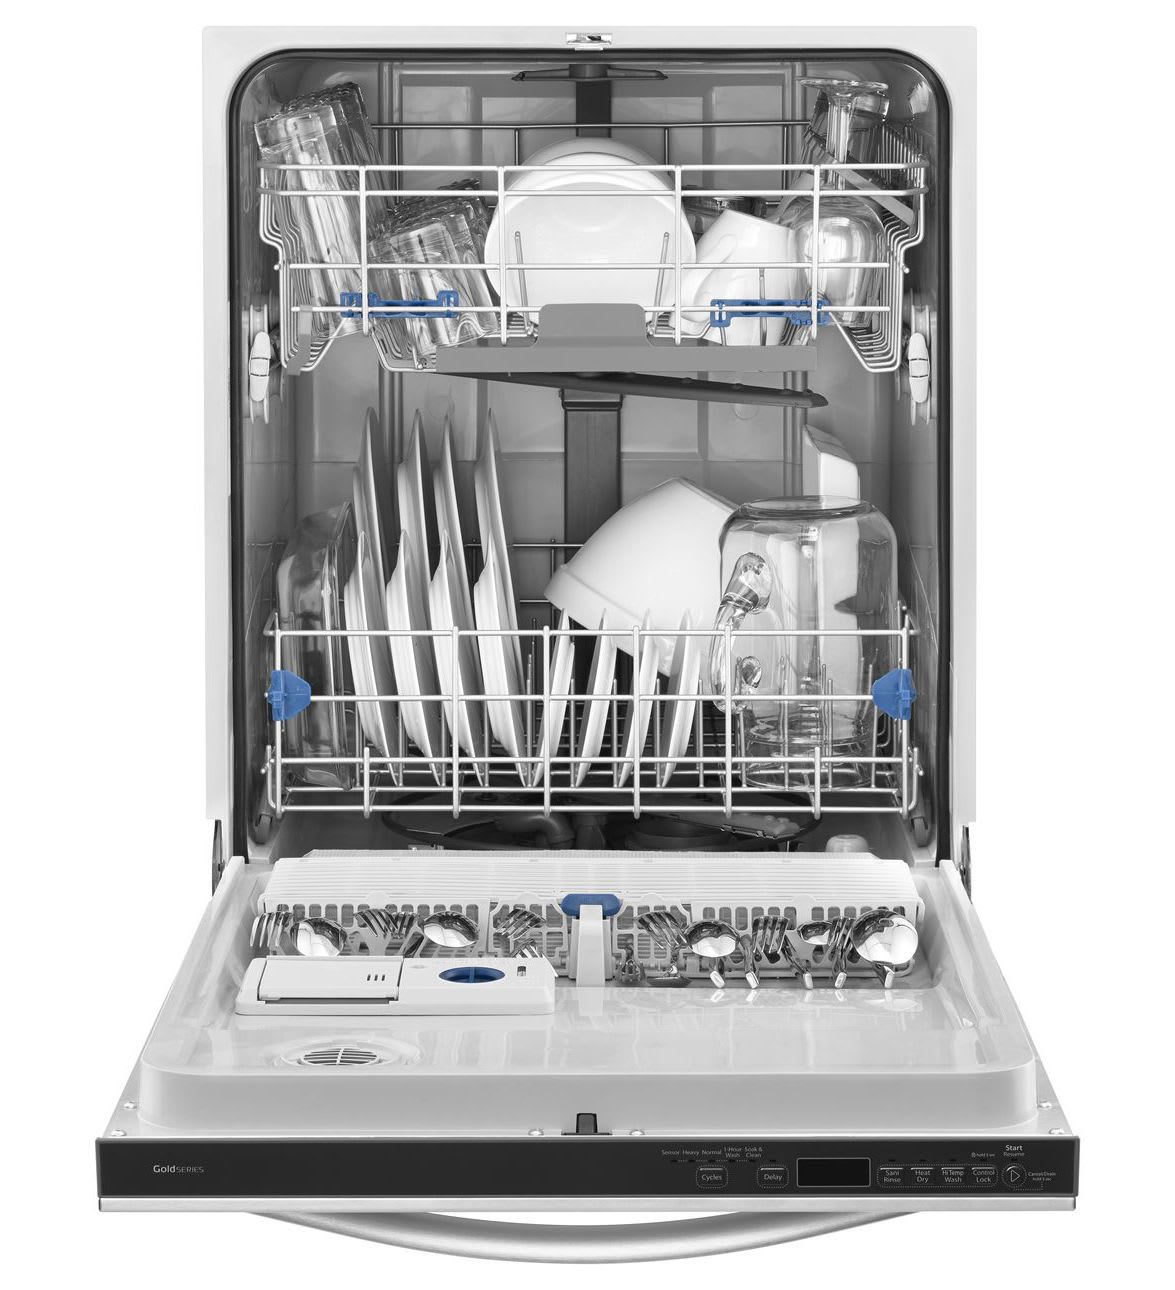 Whirlpool Dishwasher Dishwashers 